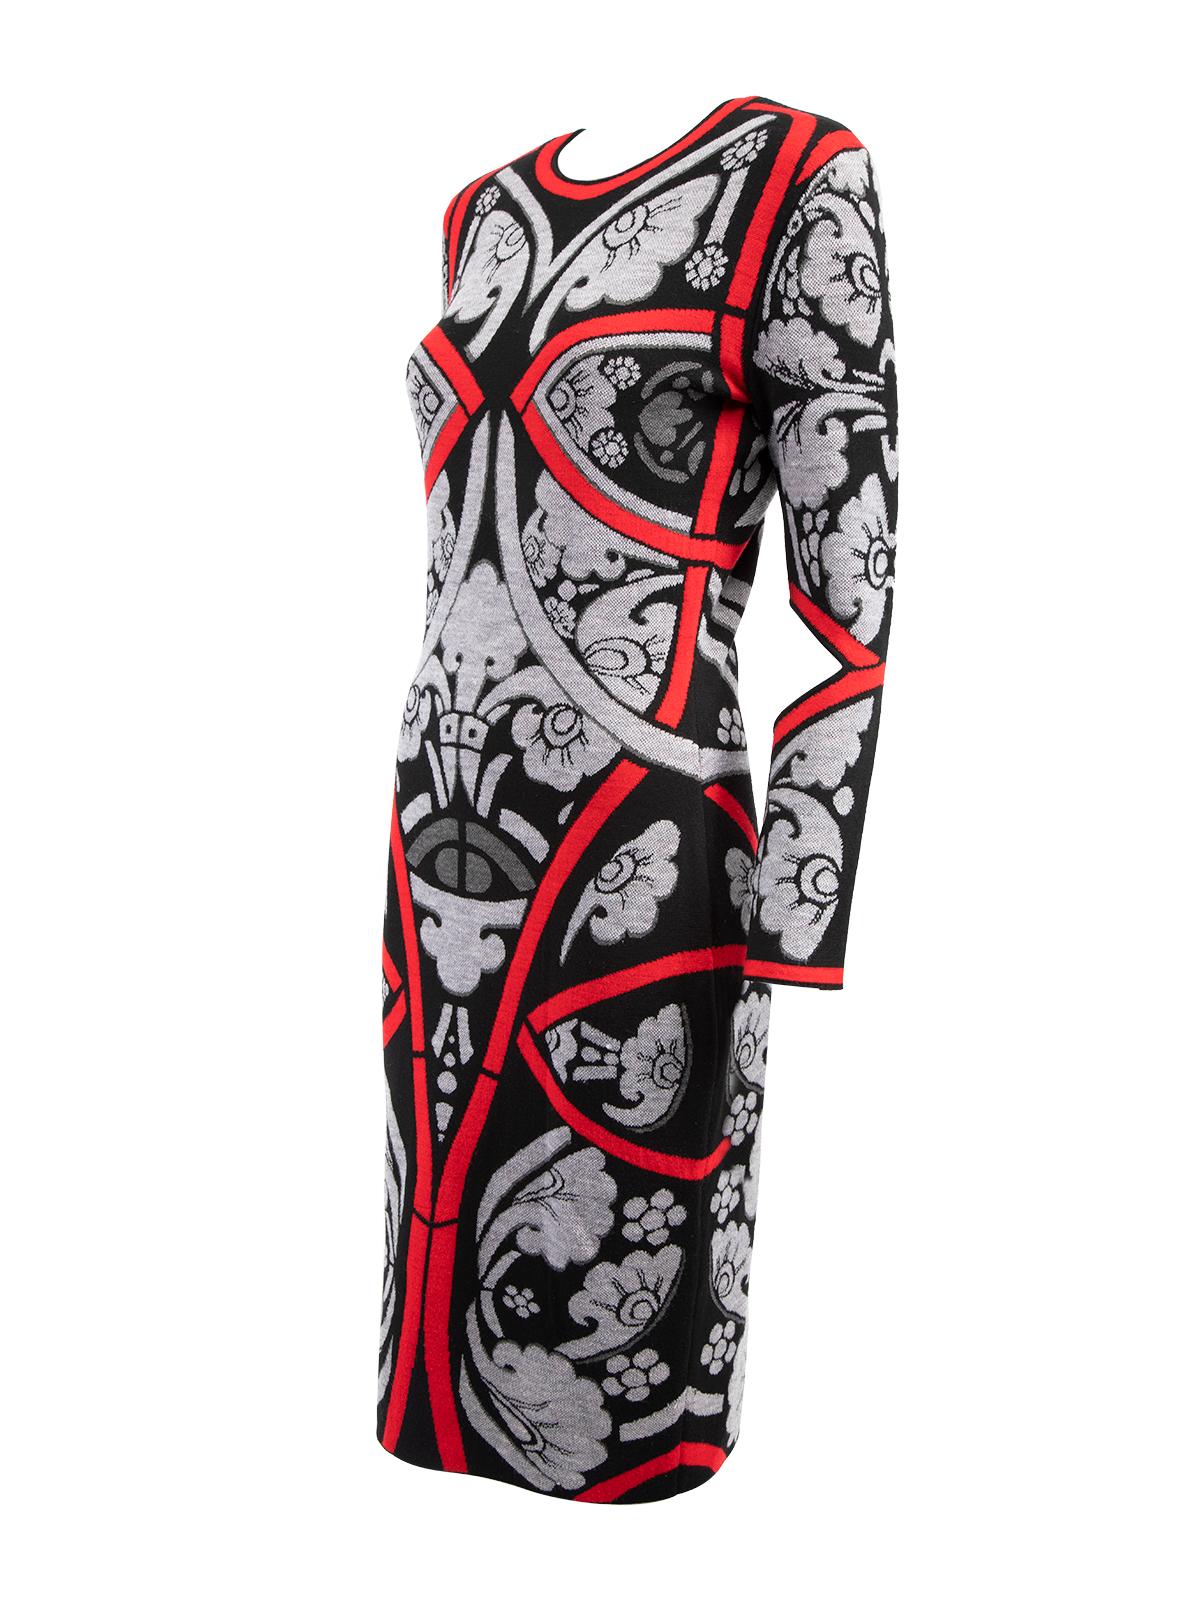 Pre-Loved Alexander McQueen Women's Long Sleeve Bodycon Dress 1